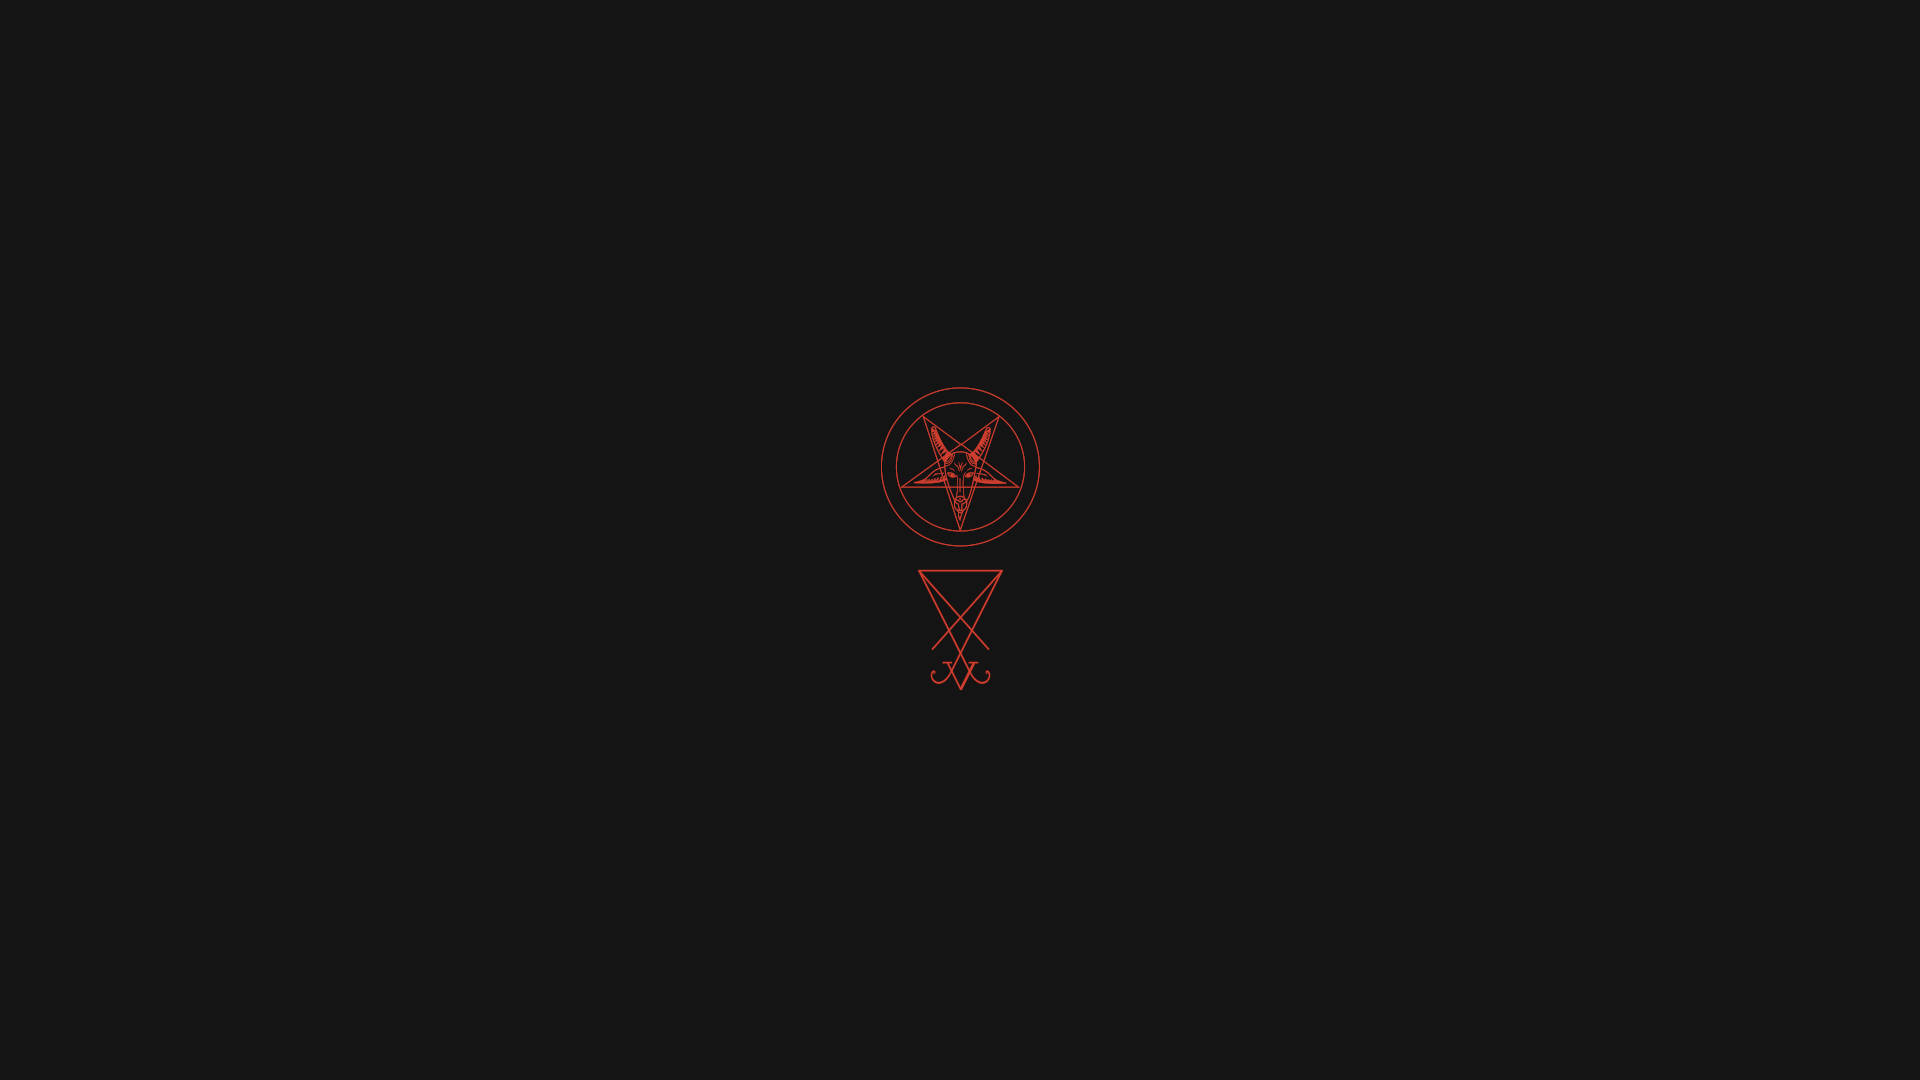 Lucifer Emblem And Pentagram